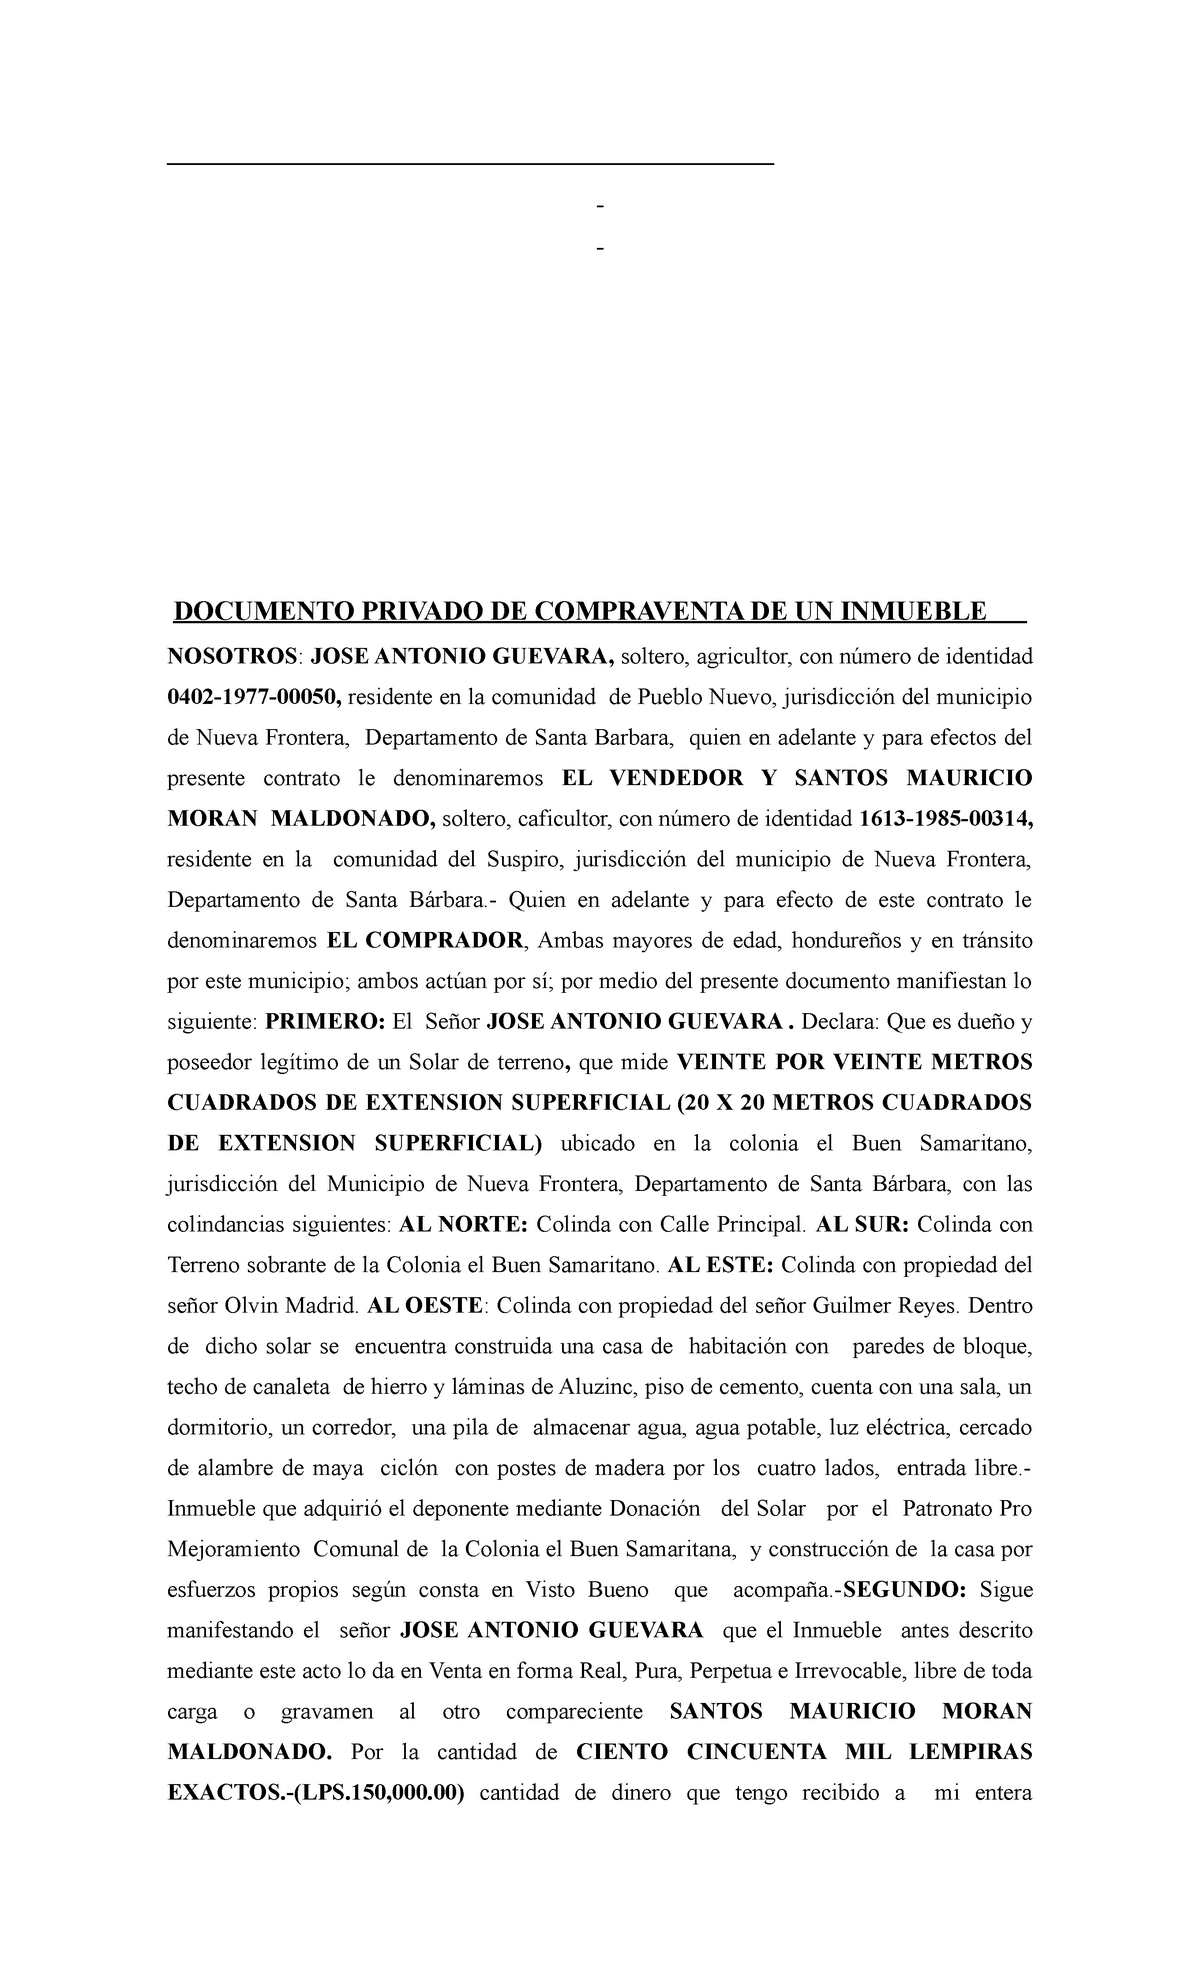 Documento De Compra Y Venta De Un Inmueble En El Area Notarial Documento Privado De 6440